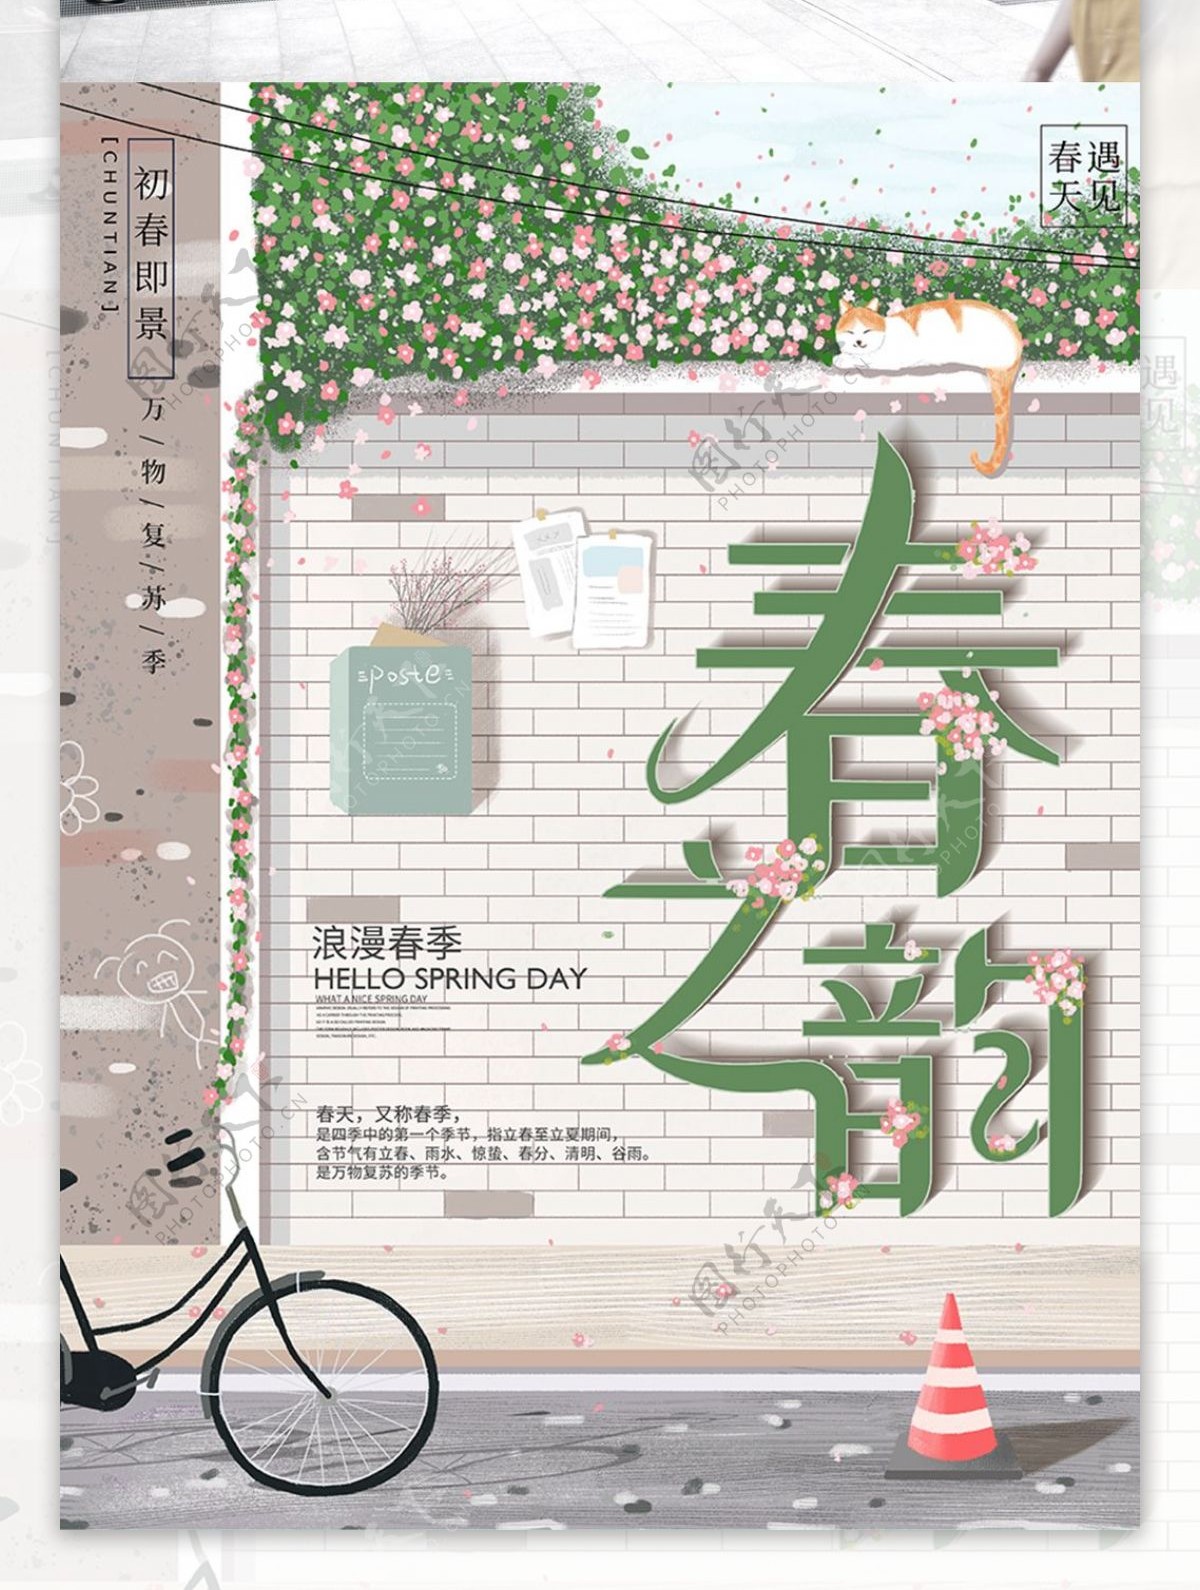 原创手绘小清新日系风景春天宣传海报